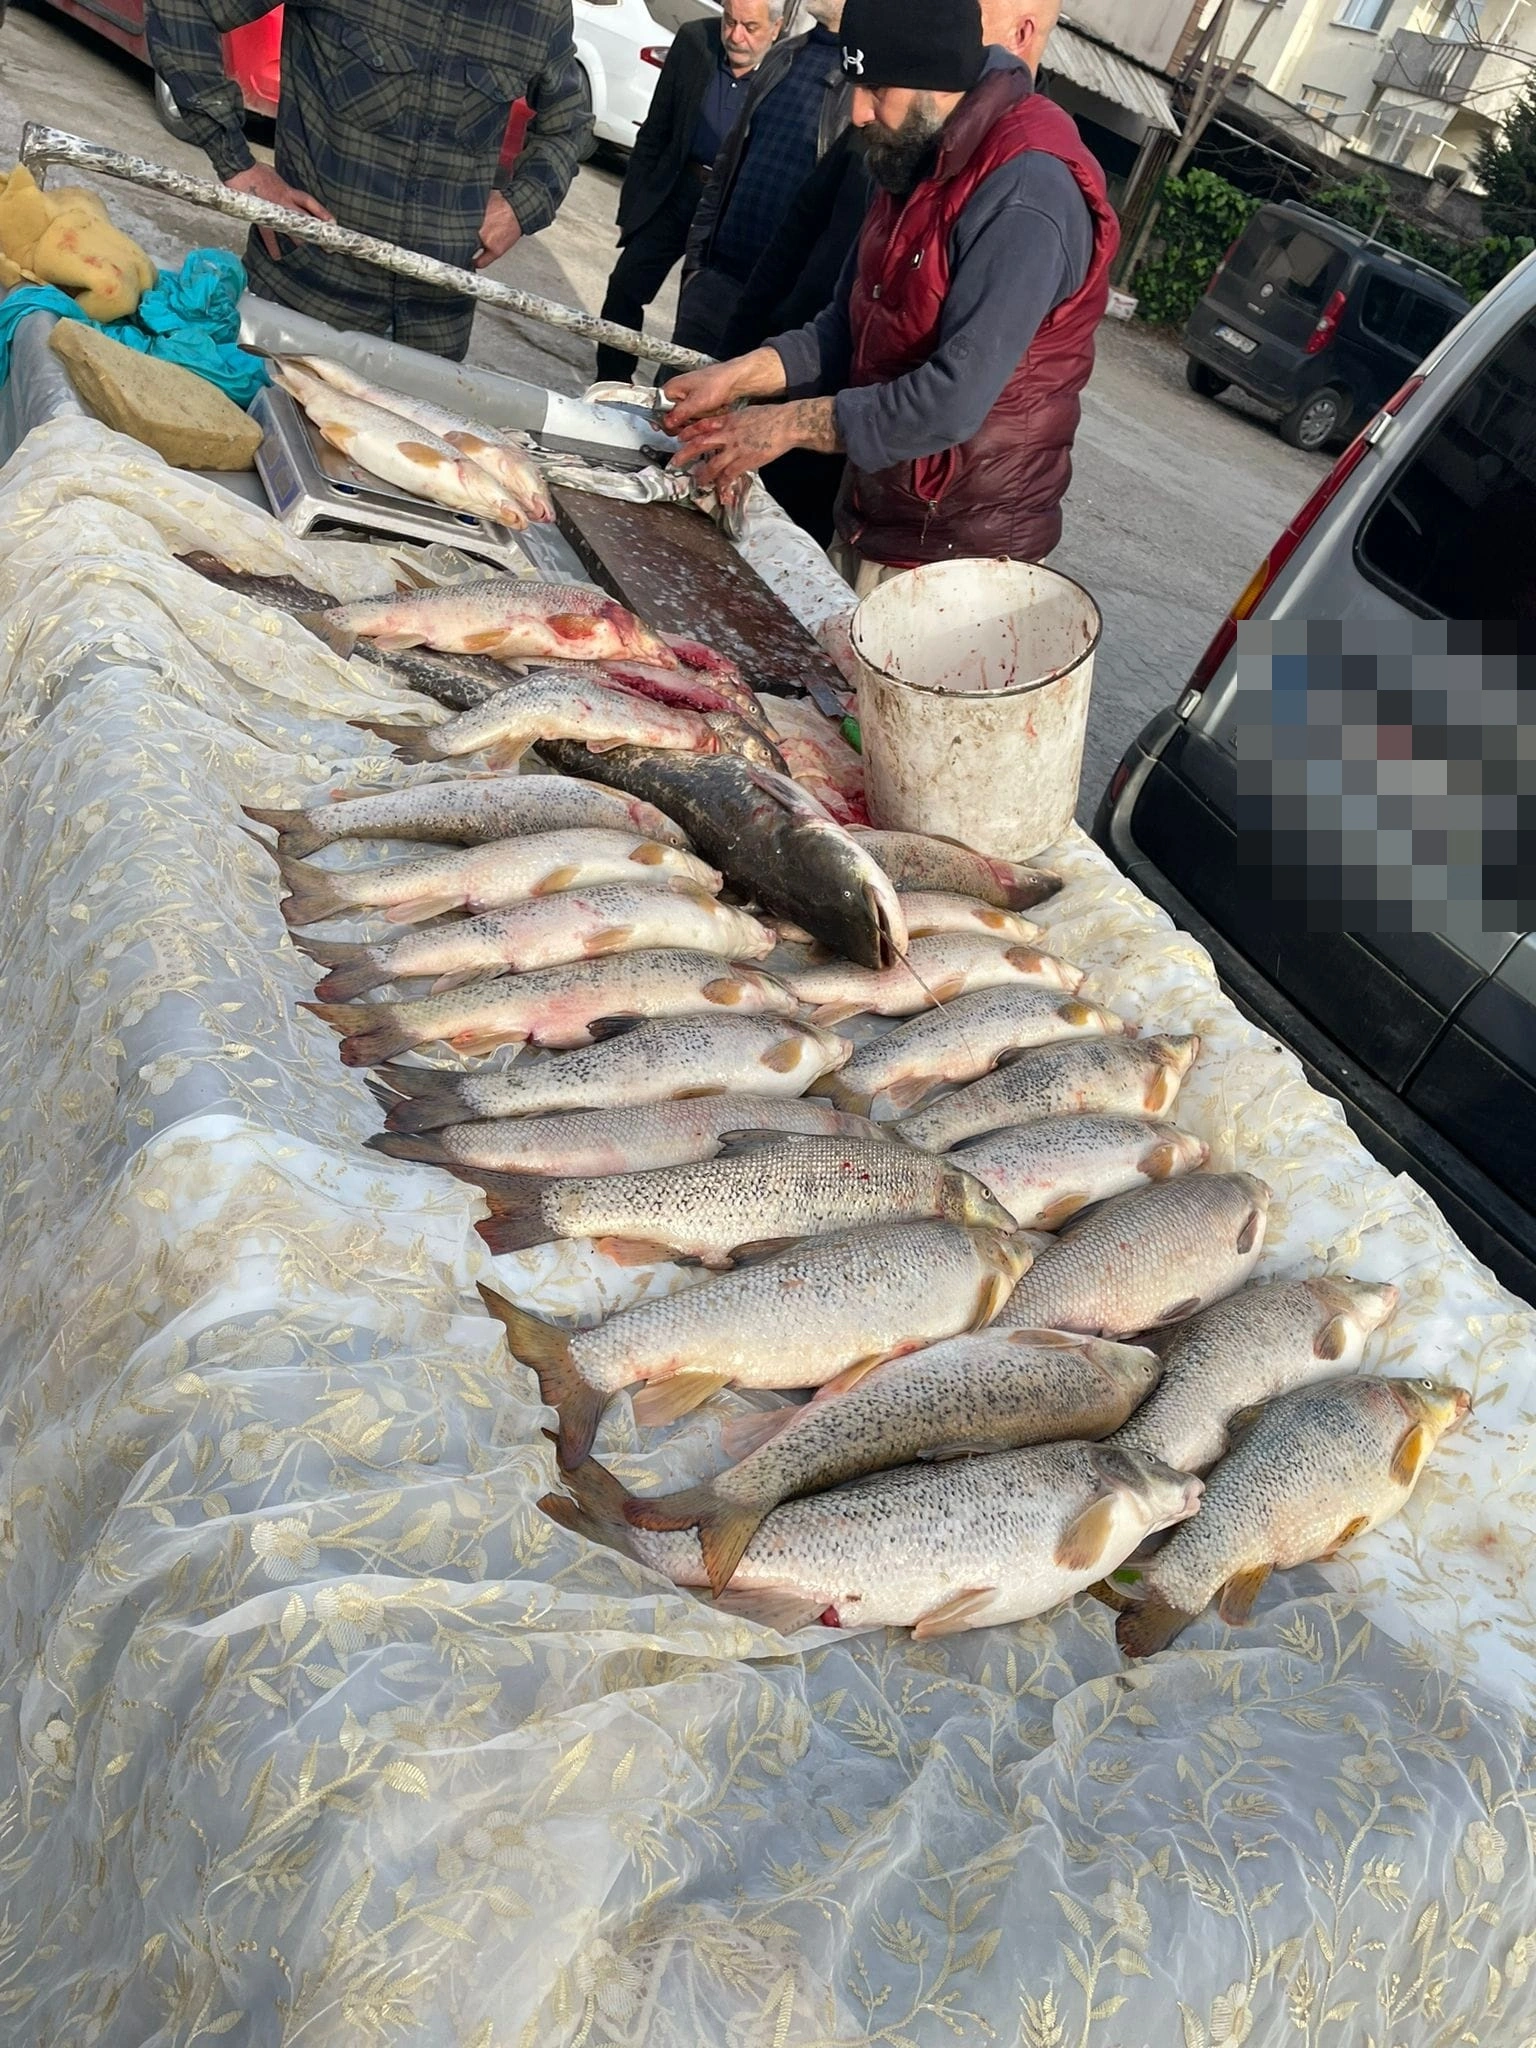 Şehrin Göbeğinde Yasak Balık Satışı: Denetim Nerede?